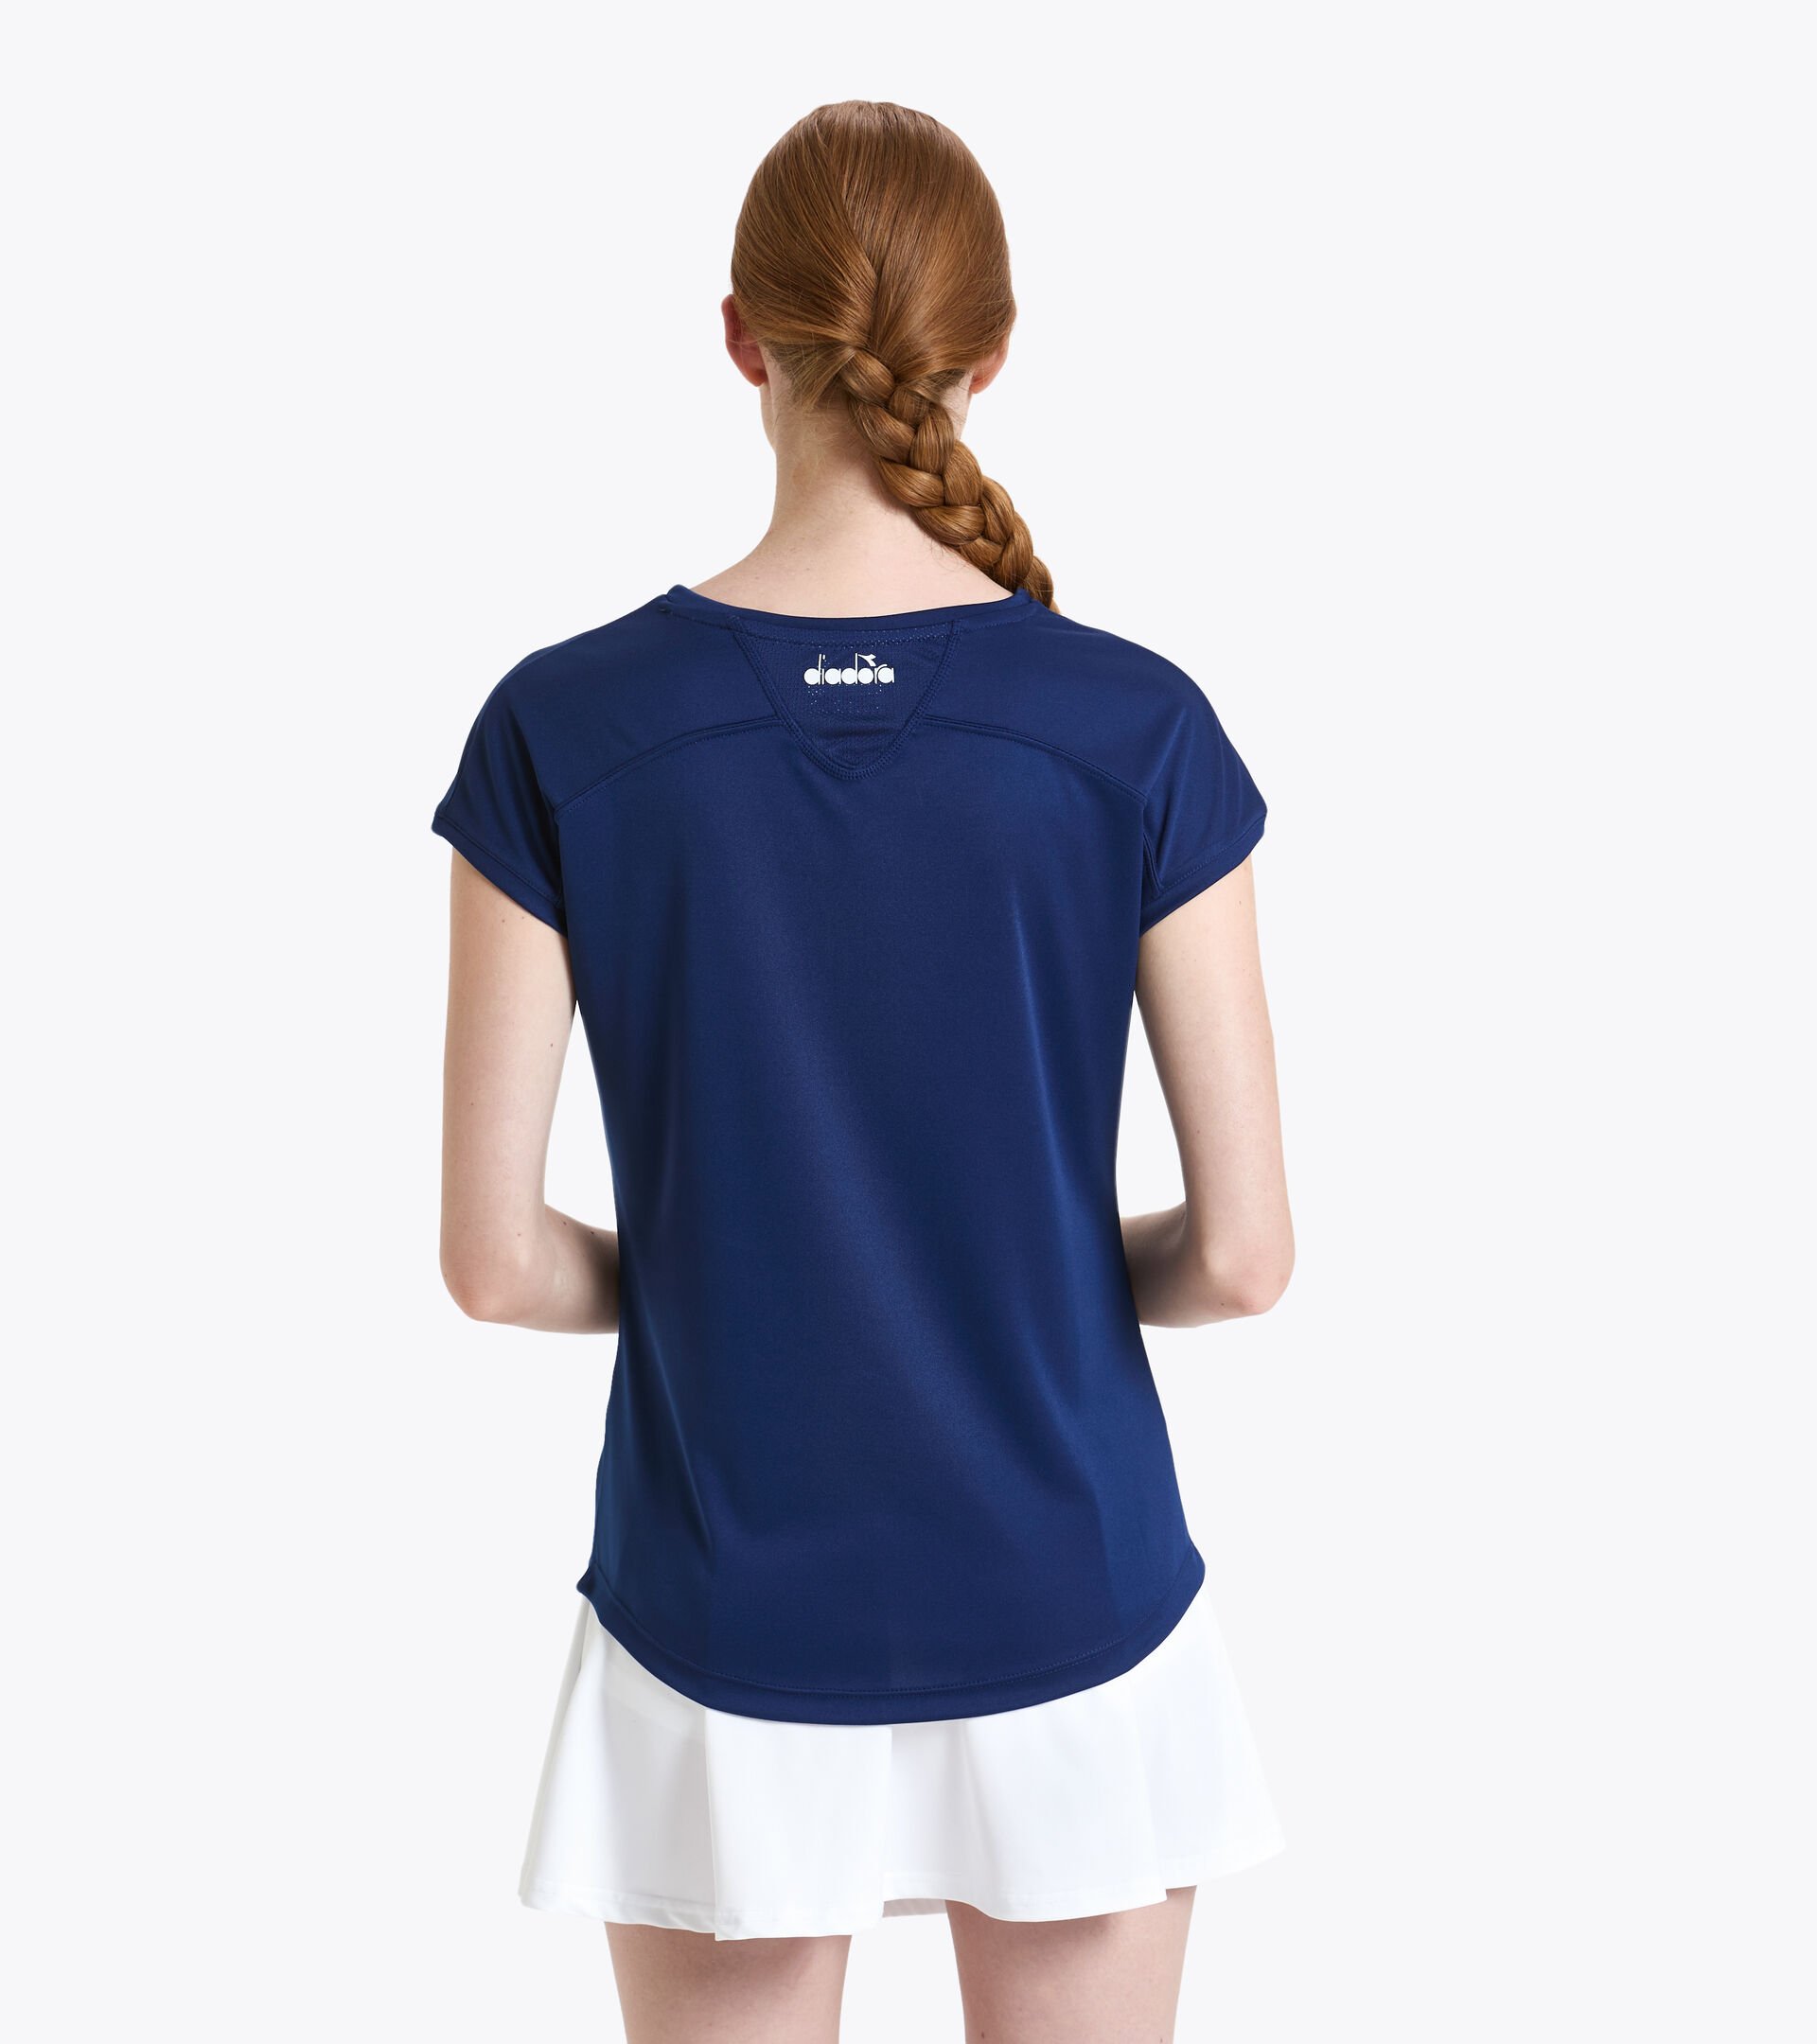 Tennis T-shirt - Women L. T-SHIRT TEAM SALTIRE NAVY - Diadora